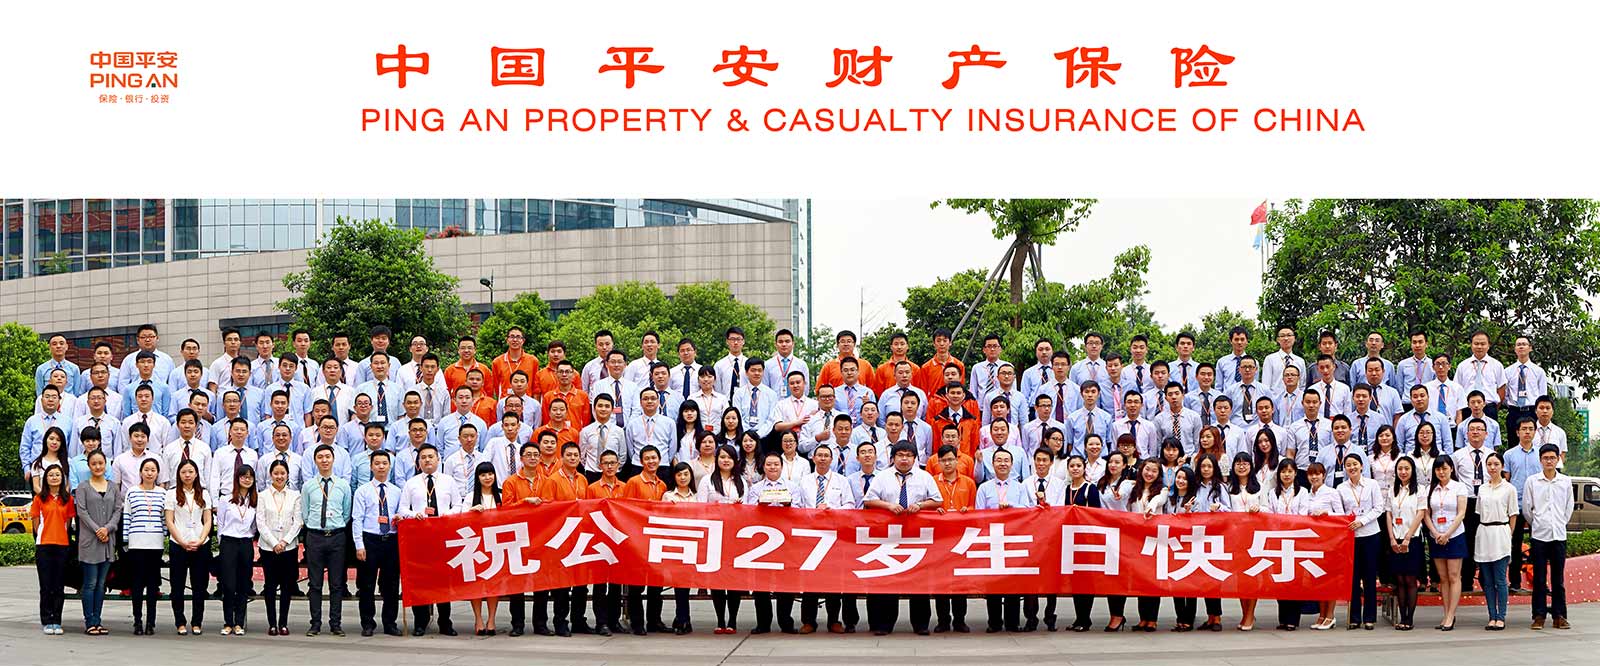 中国平安财产保险公司集体照200人